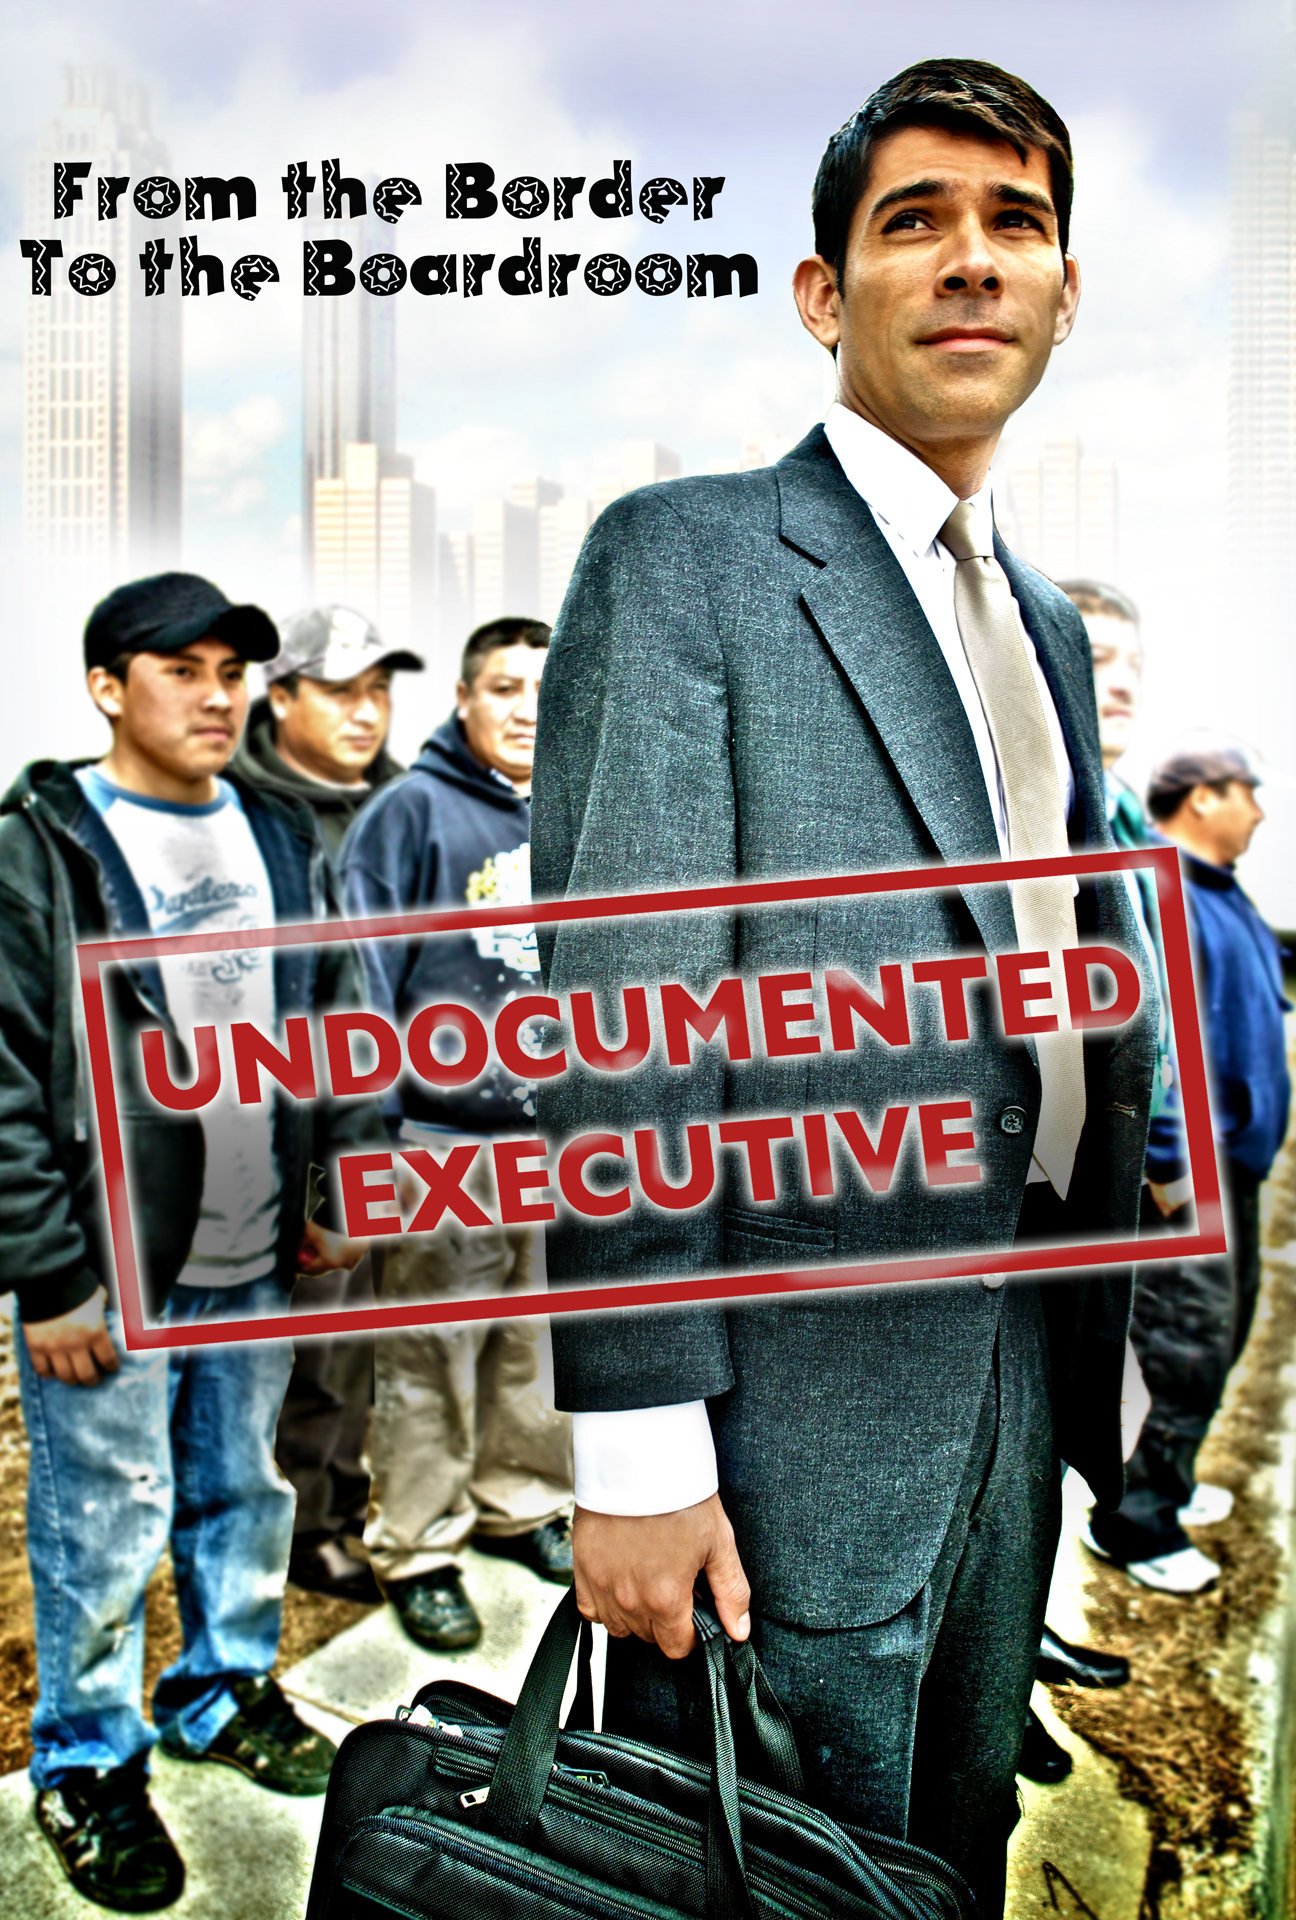 Фото - Undocumented Executive: 1296x1920 / 526 Кб